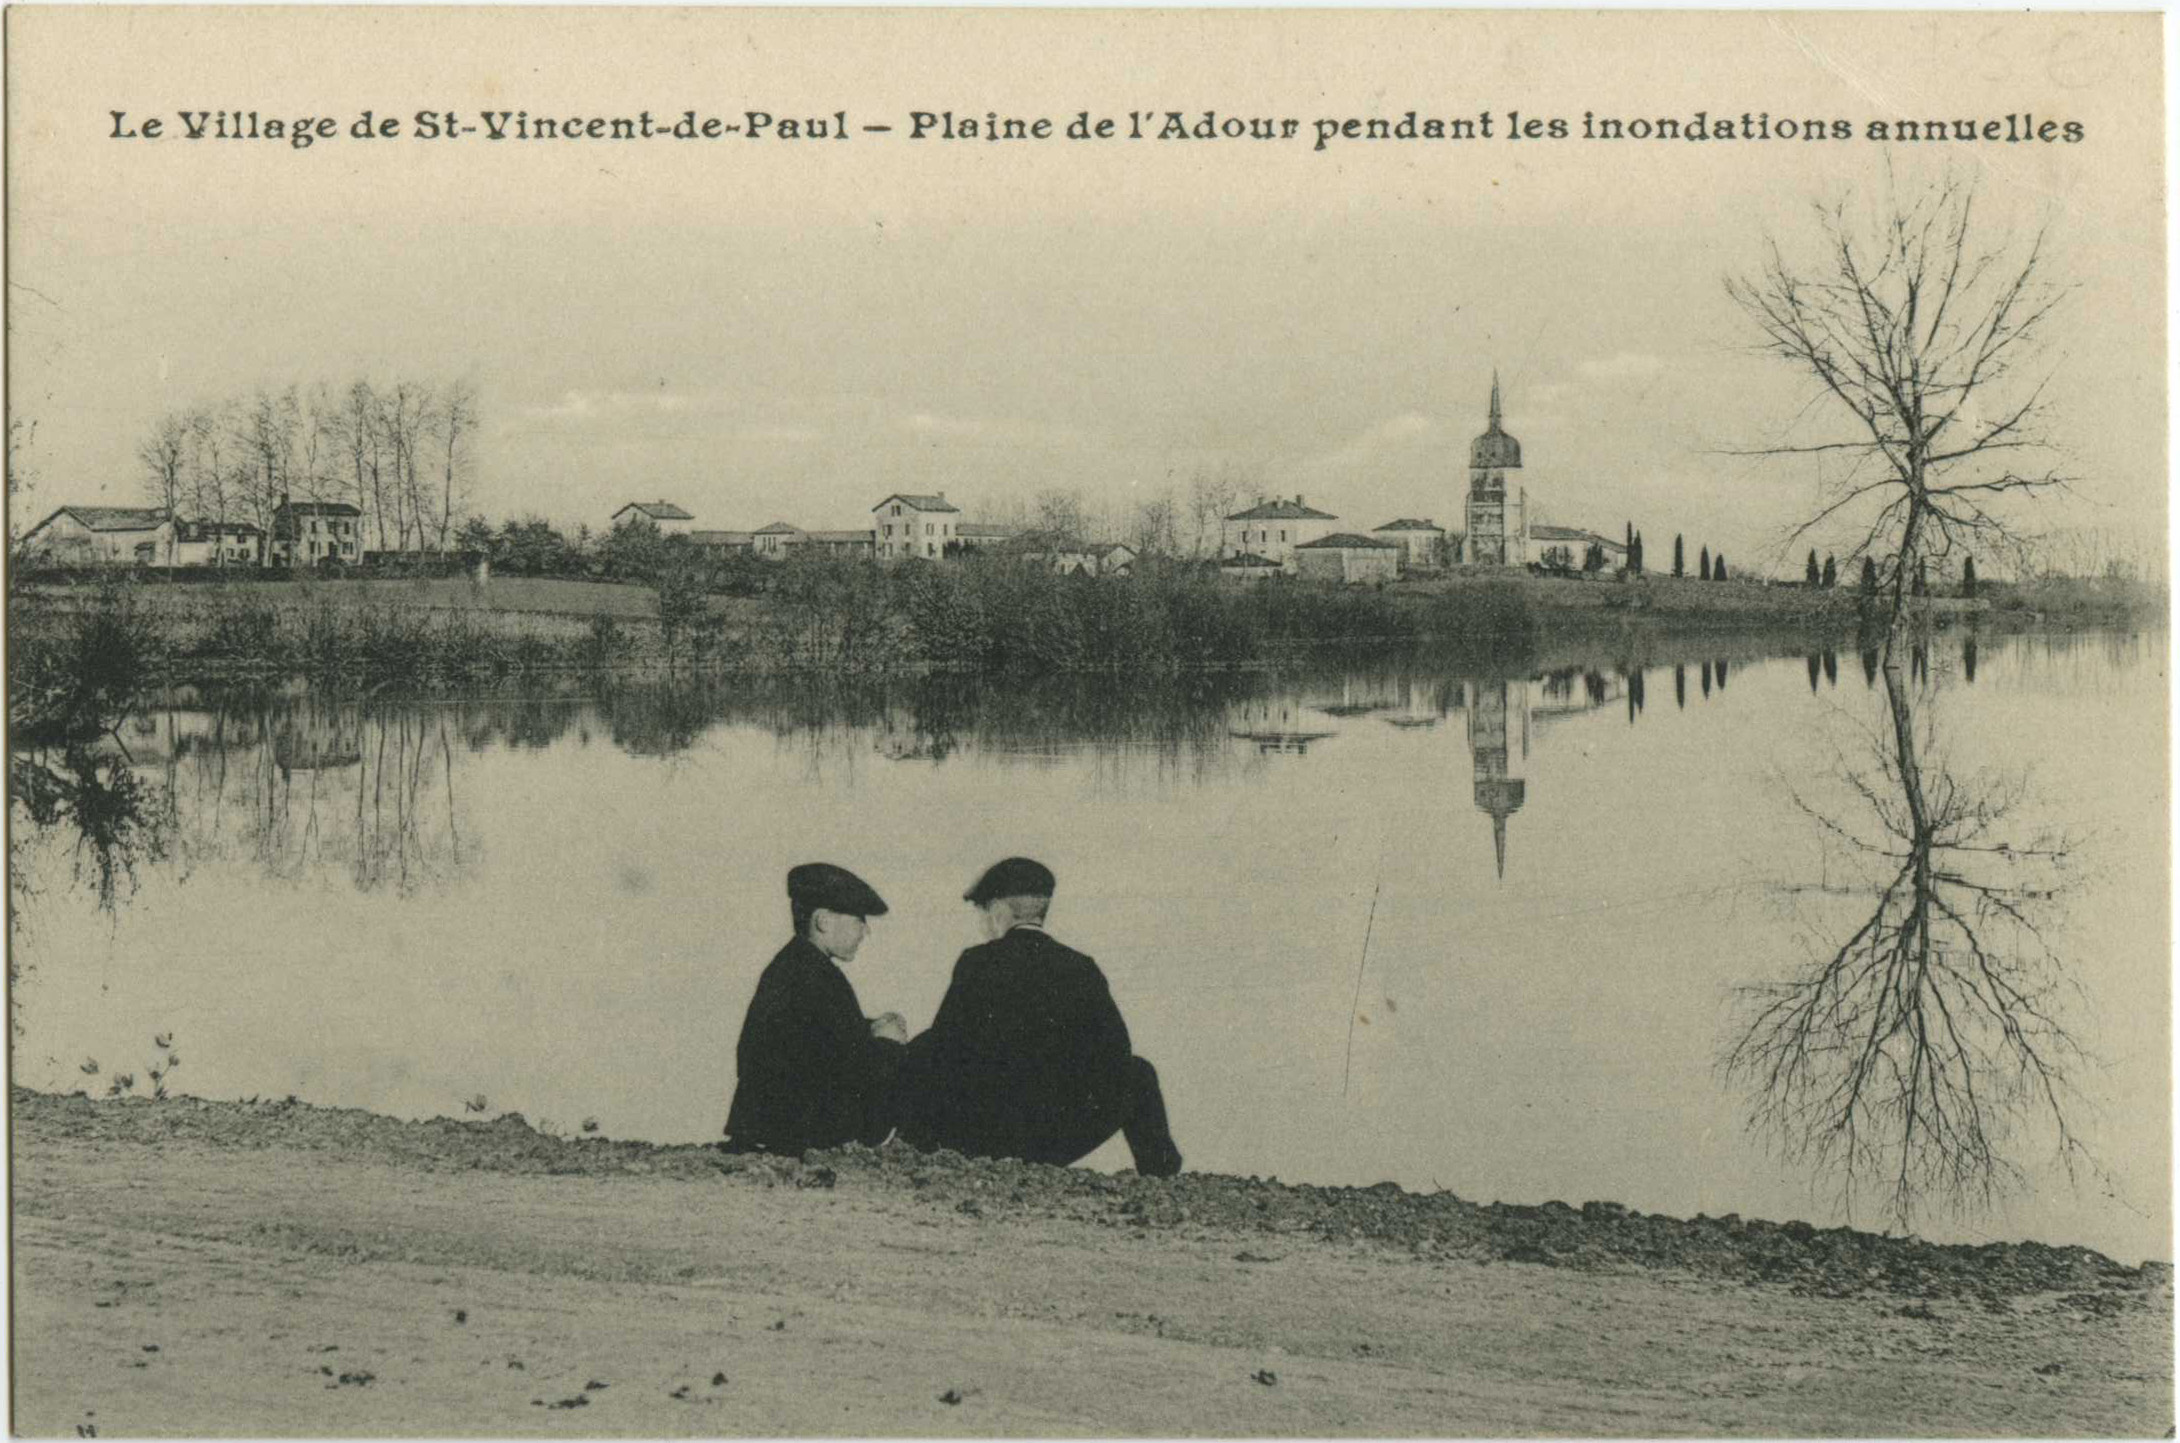 Saint-Vincent-de-Paul - Le Village de St-Vincent-de-Paul - Plaine de l'Adour pendant les inondations annuelles